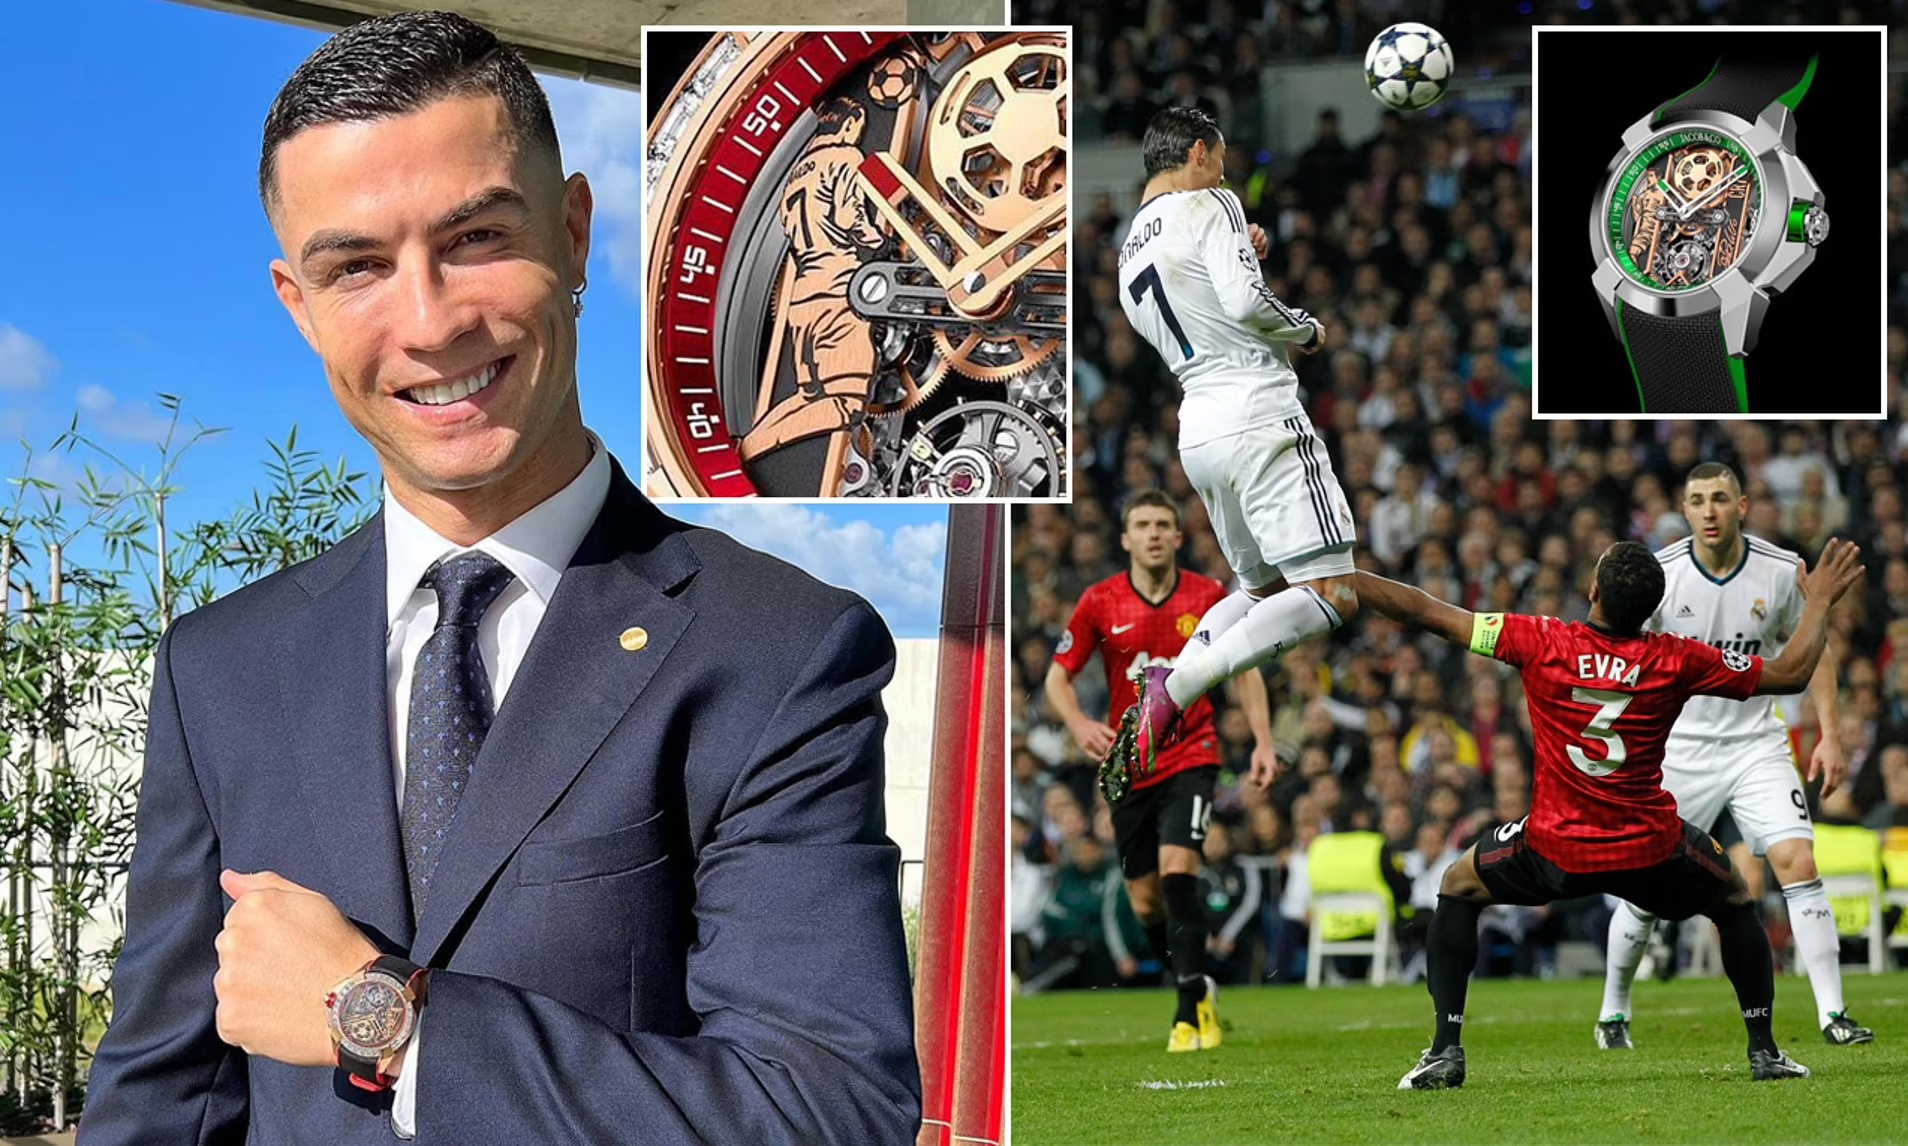 Cristiano Ronaldo luôn là một nhân vật ăn khách trong giới đồng hồ thời trang. Và được biết bây giờ anh ta còn sở hữu một chiếc đồng hồ mới nữa. Nhấp vào hình ảnh và cảm nhận sự đẳng cấp của Ronaldo qua chiếc đồng hồ mới này.